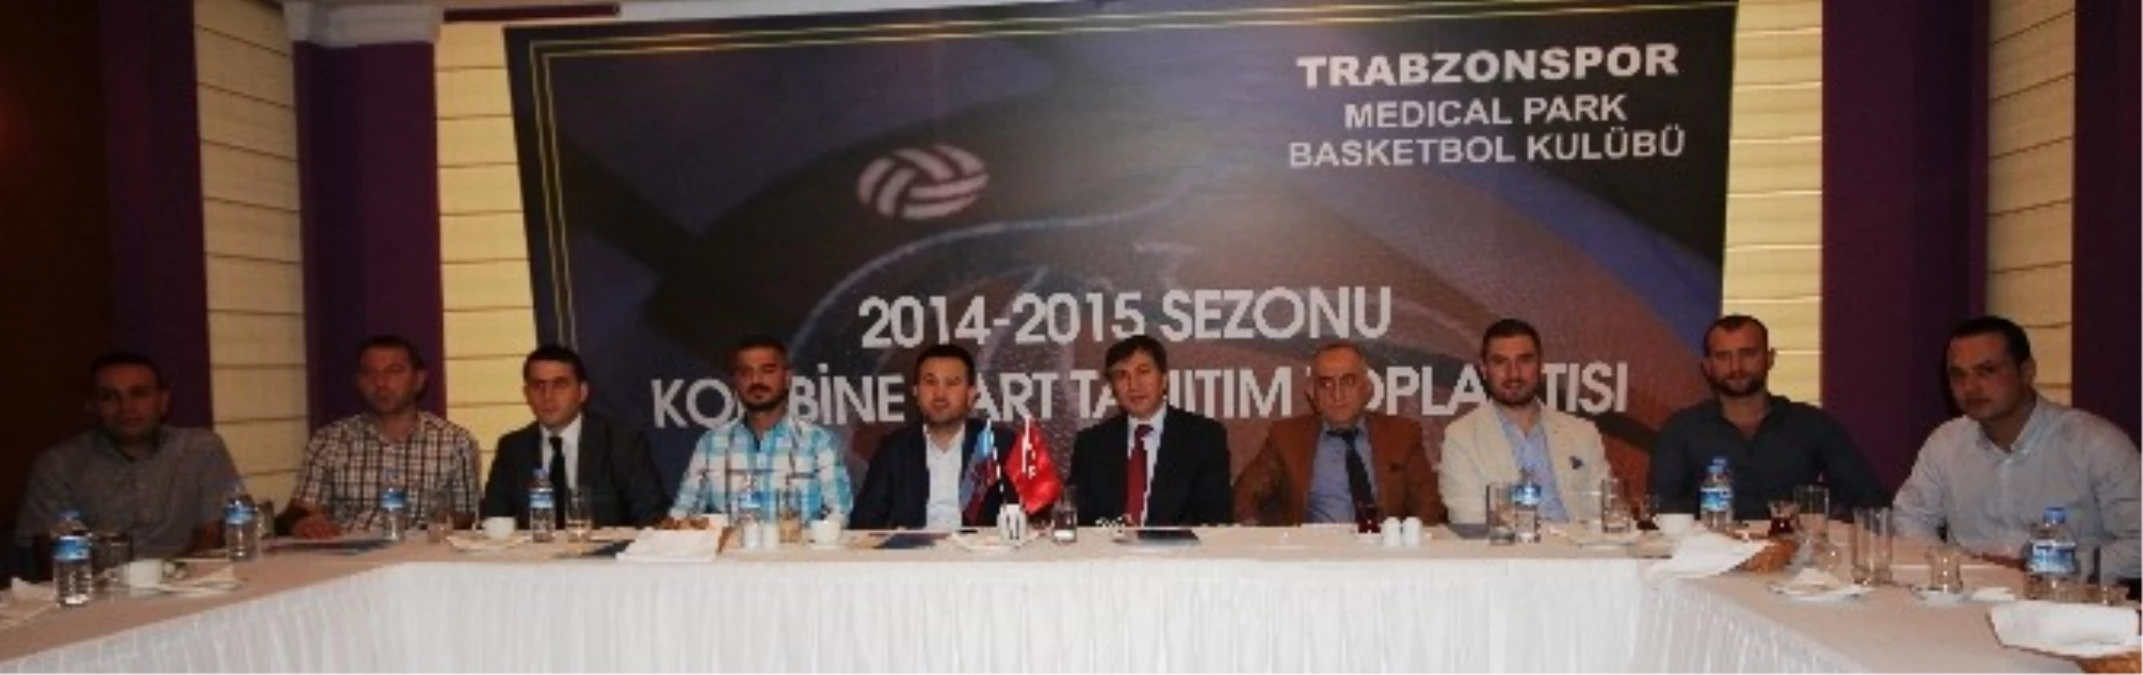 Trabzonspor Medicalpark Basketbol Takımı Kombine Kart Tanıtım Toplantısı Yapıldı